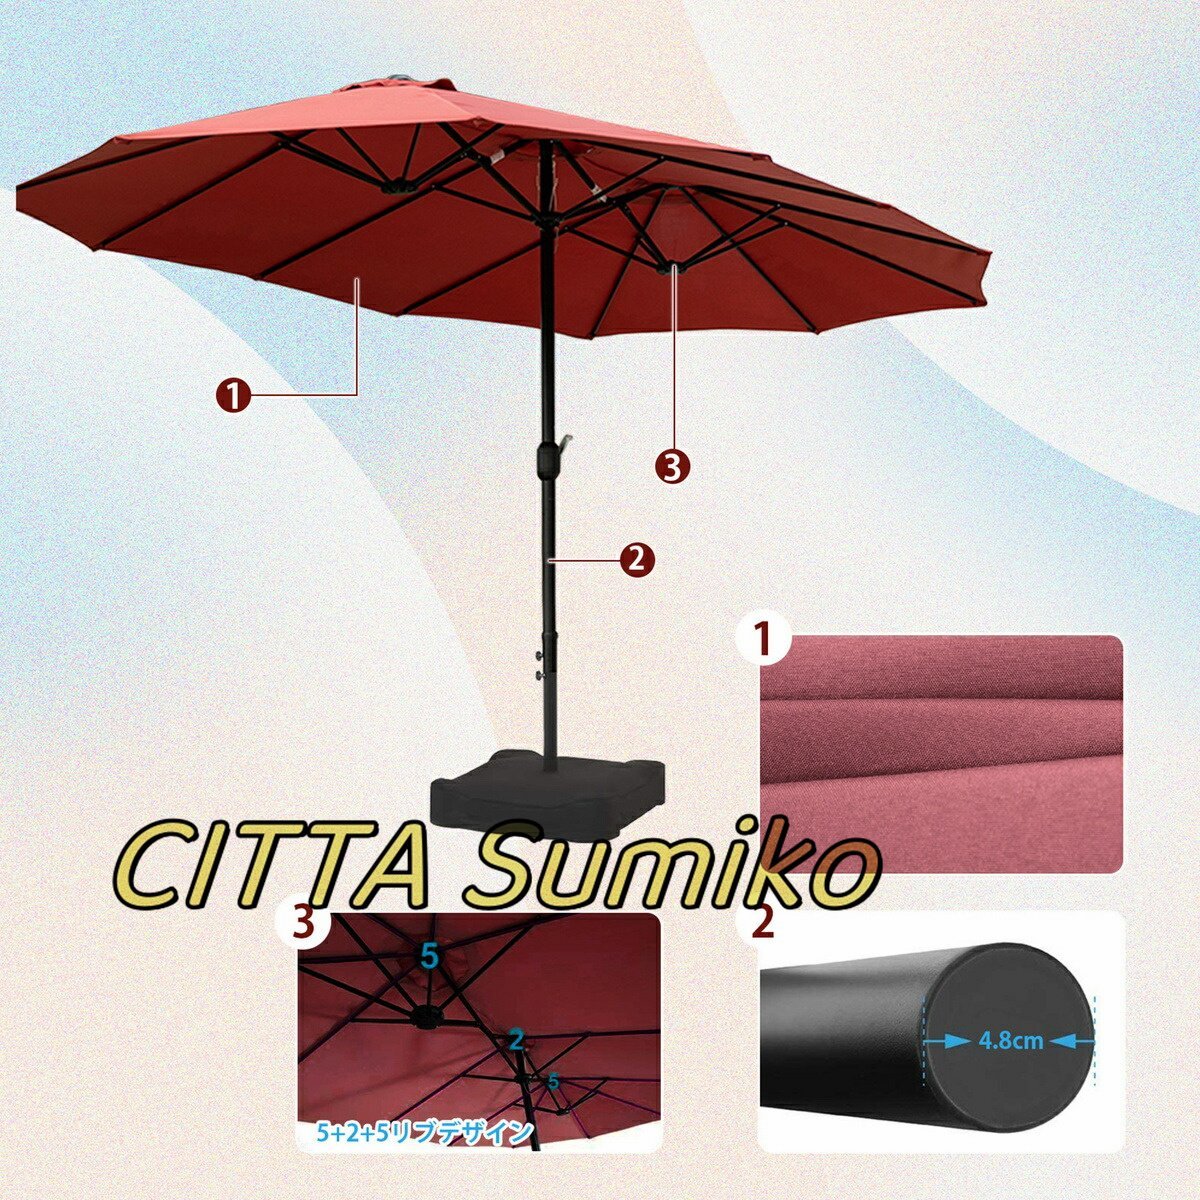  высокое качество зонт сад зонт большой прямоугольный зонт 460cm× 260cm UV cut водоотталкивающая отделка кривошип открытие и закрытие имеется Sand сумка основа имеется 